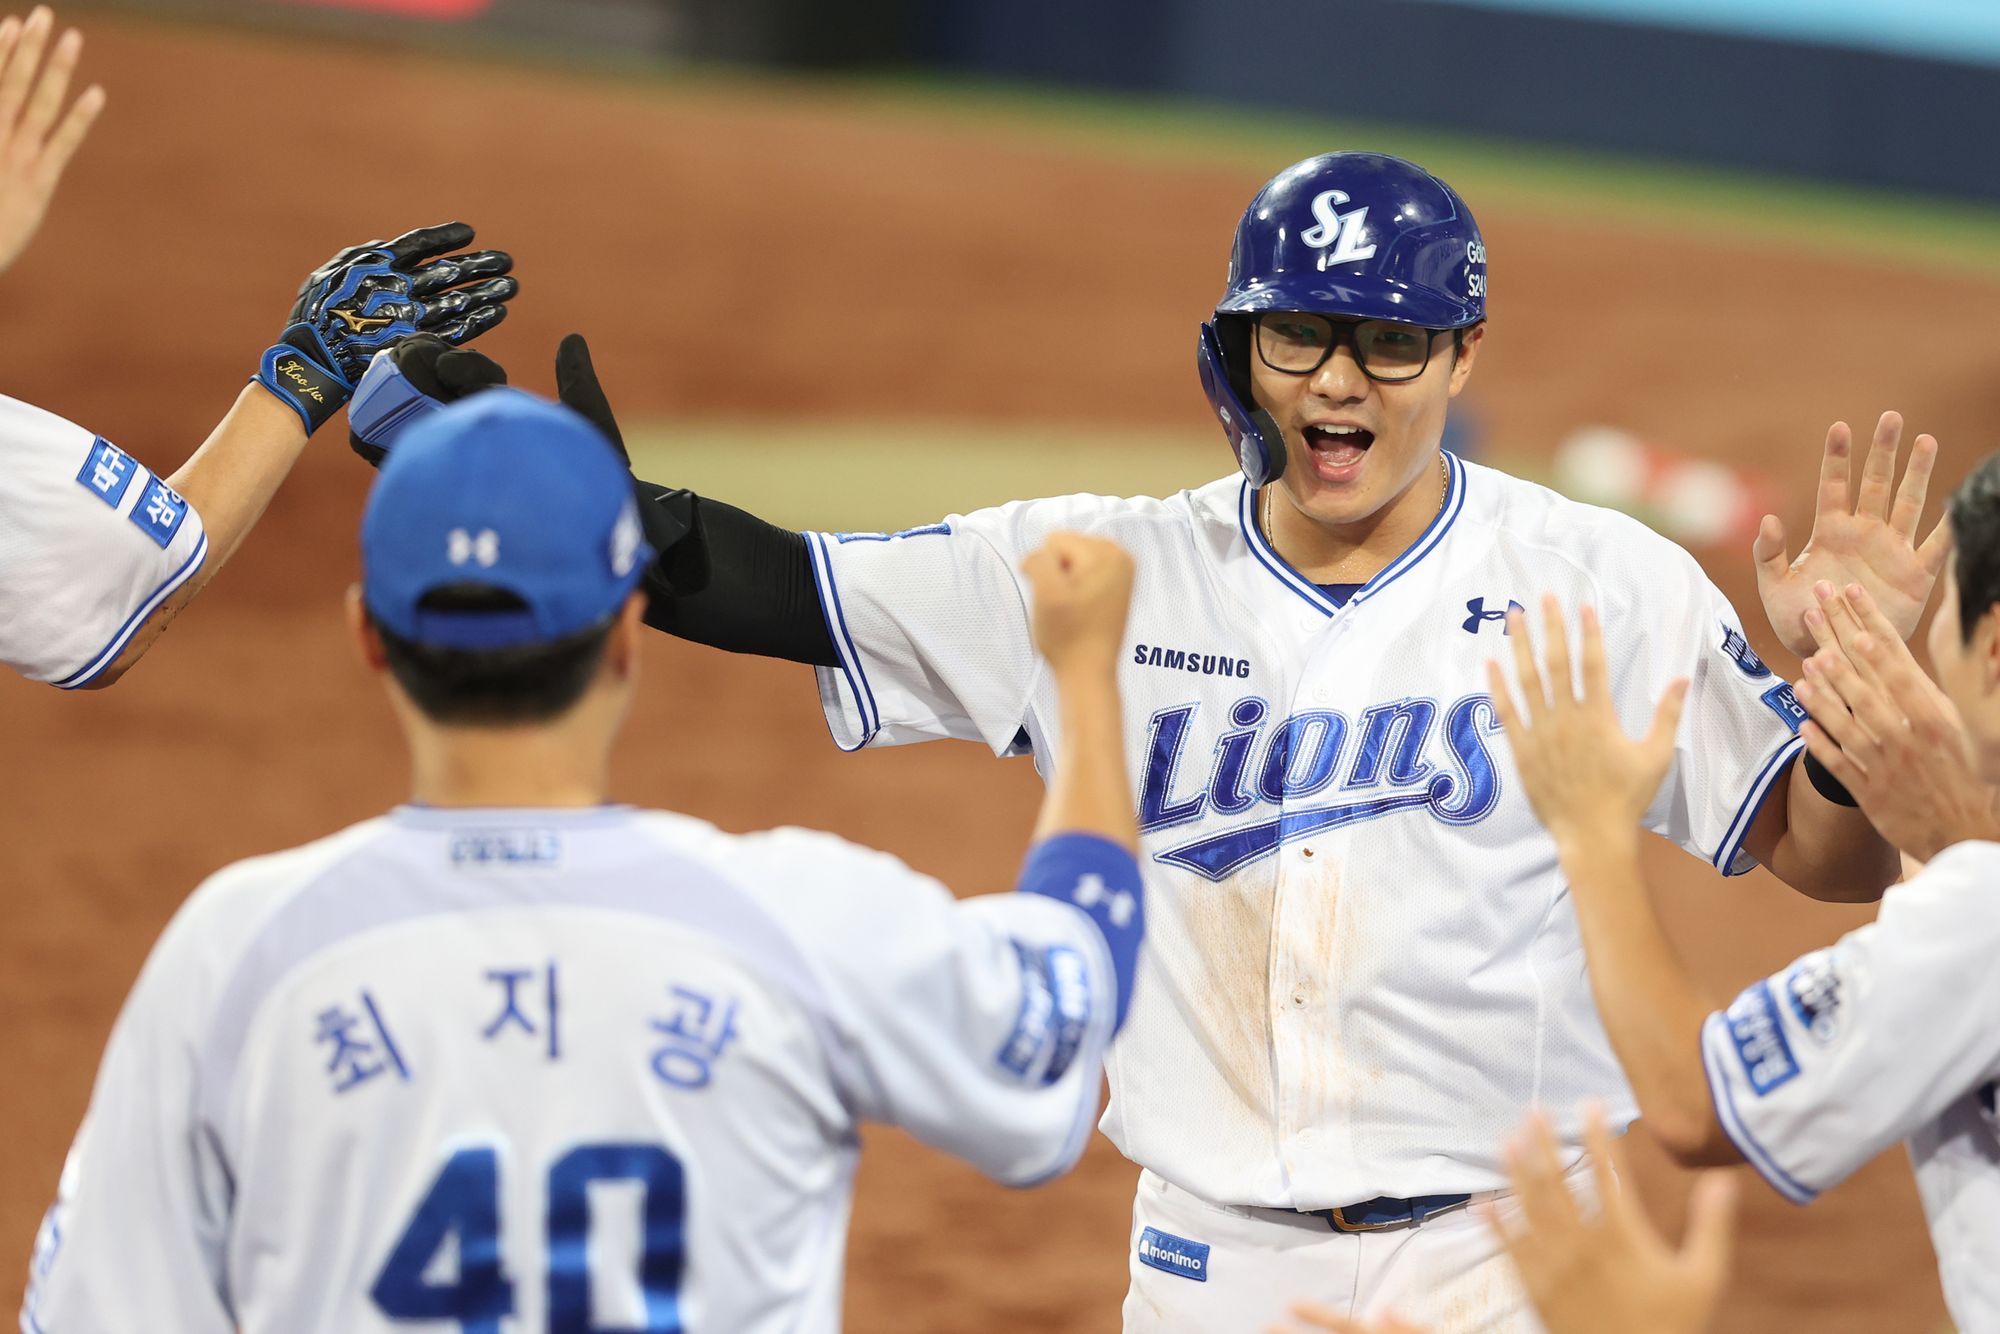 삼성 라이온즈 윤정빈이 경기 중 홈런을 친 뒤 동료들의 축하를 받고 있다. 삼성 라이온즈 제공